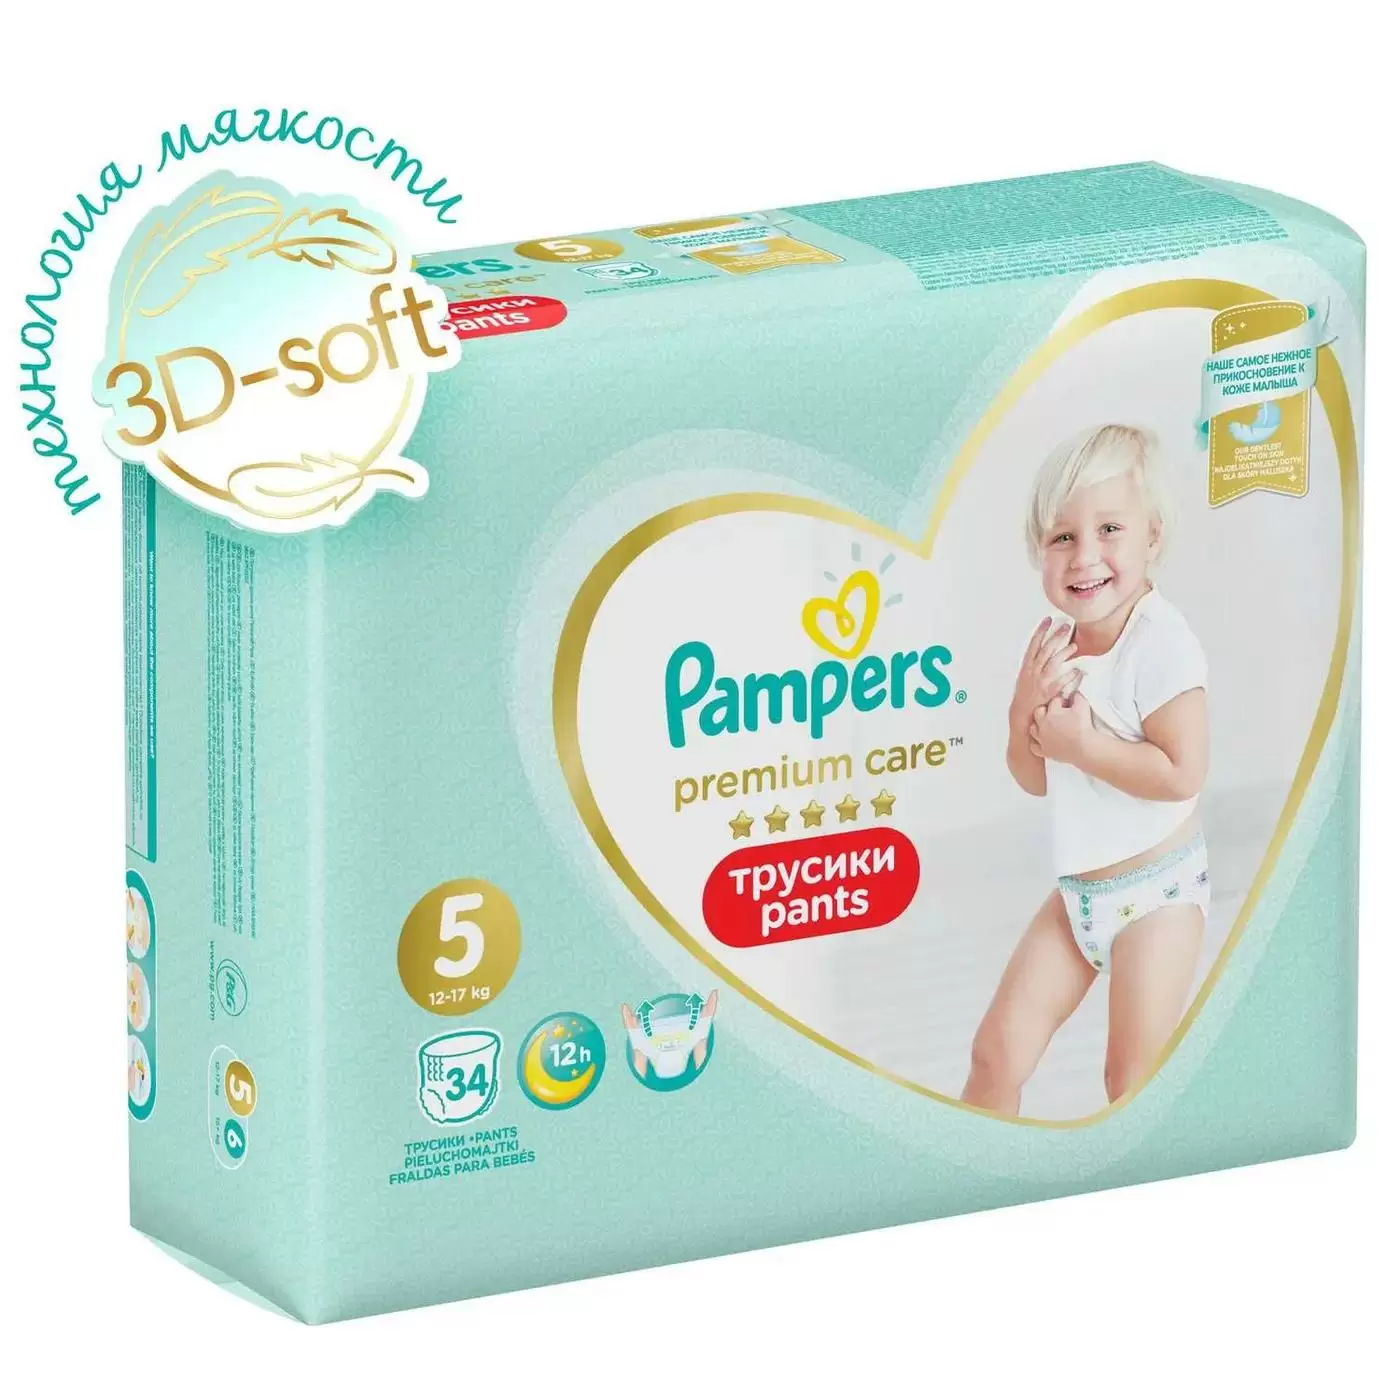 Подгузники-трусики PAMPERS Premium Care Pants Junior (12-17кг) 34шт